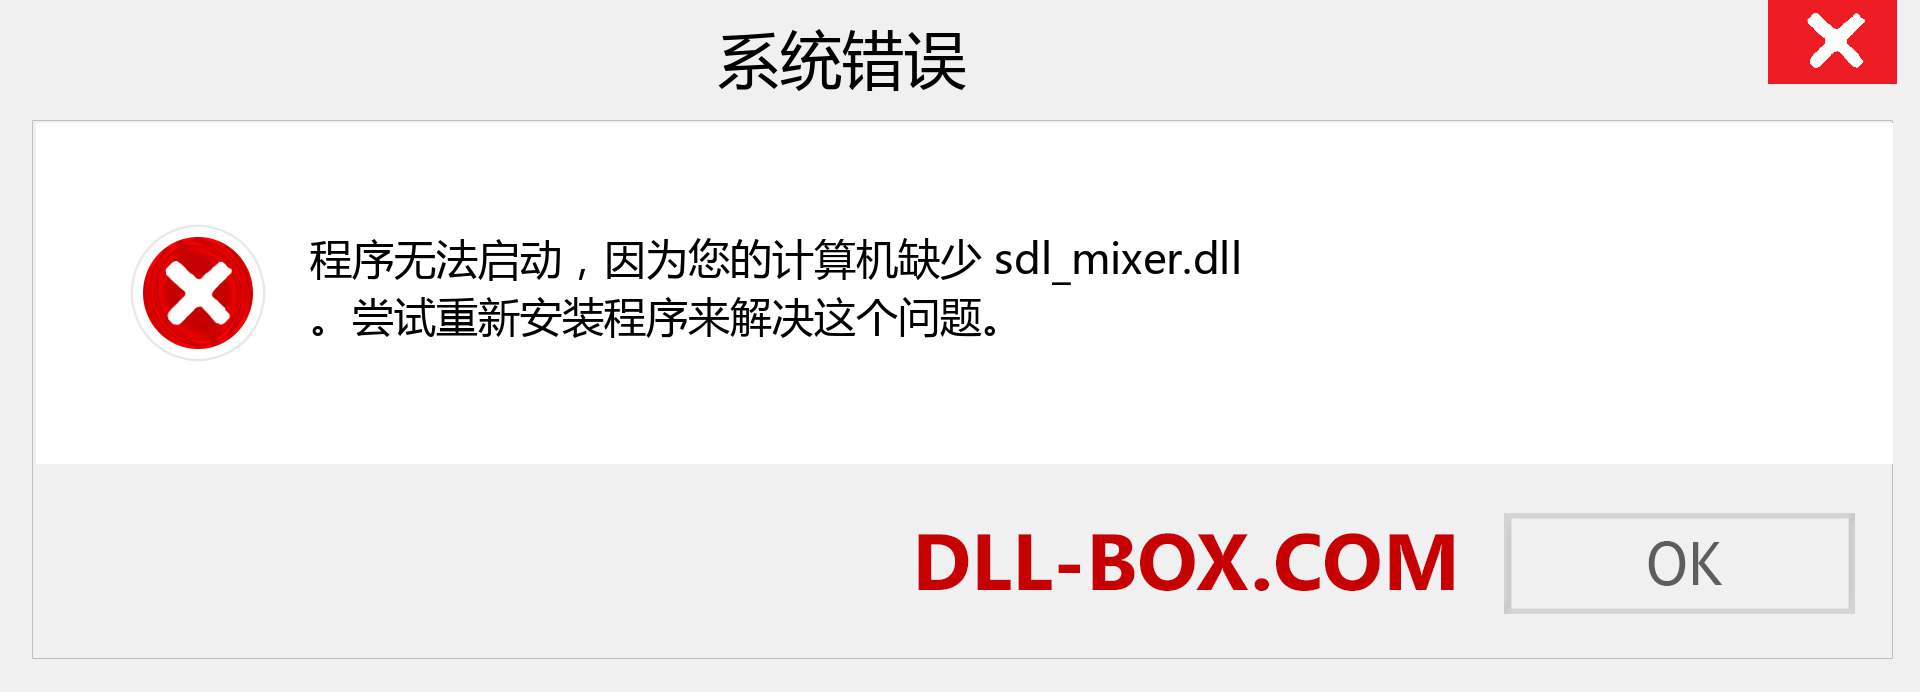 sdl_mixer.dll 文件丢失？。 适用于 Windows 7、8、10 的下载 - 修复 Windows、照片、图像上的 sdl_mixer dll 丢失错误